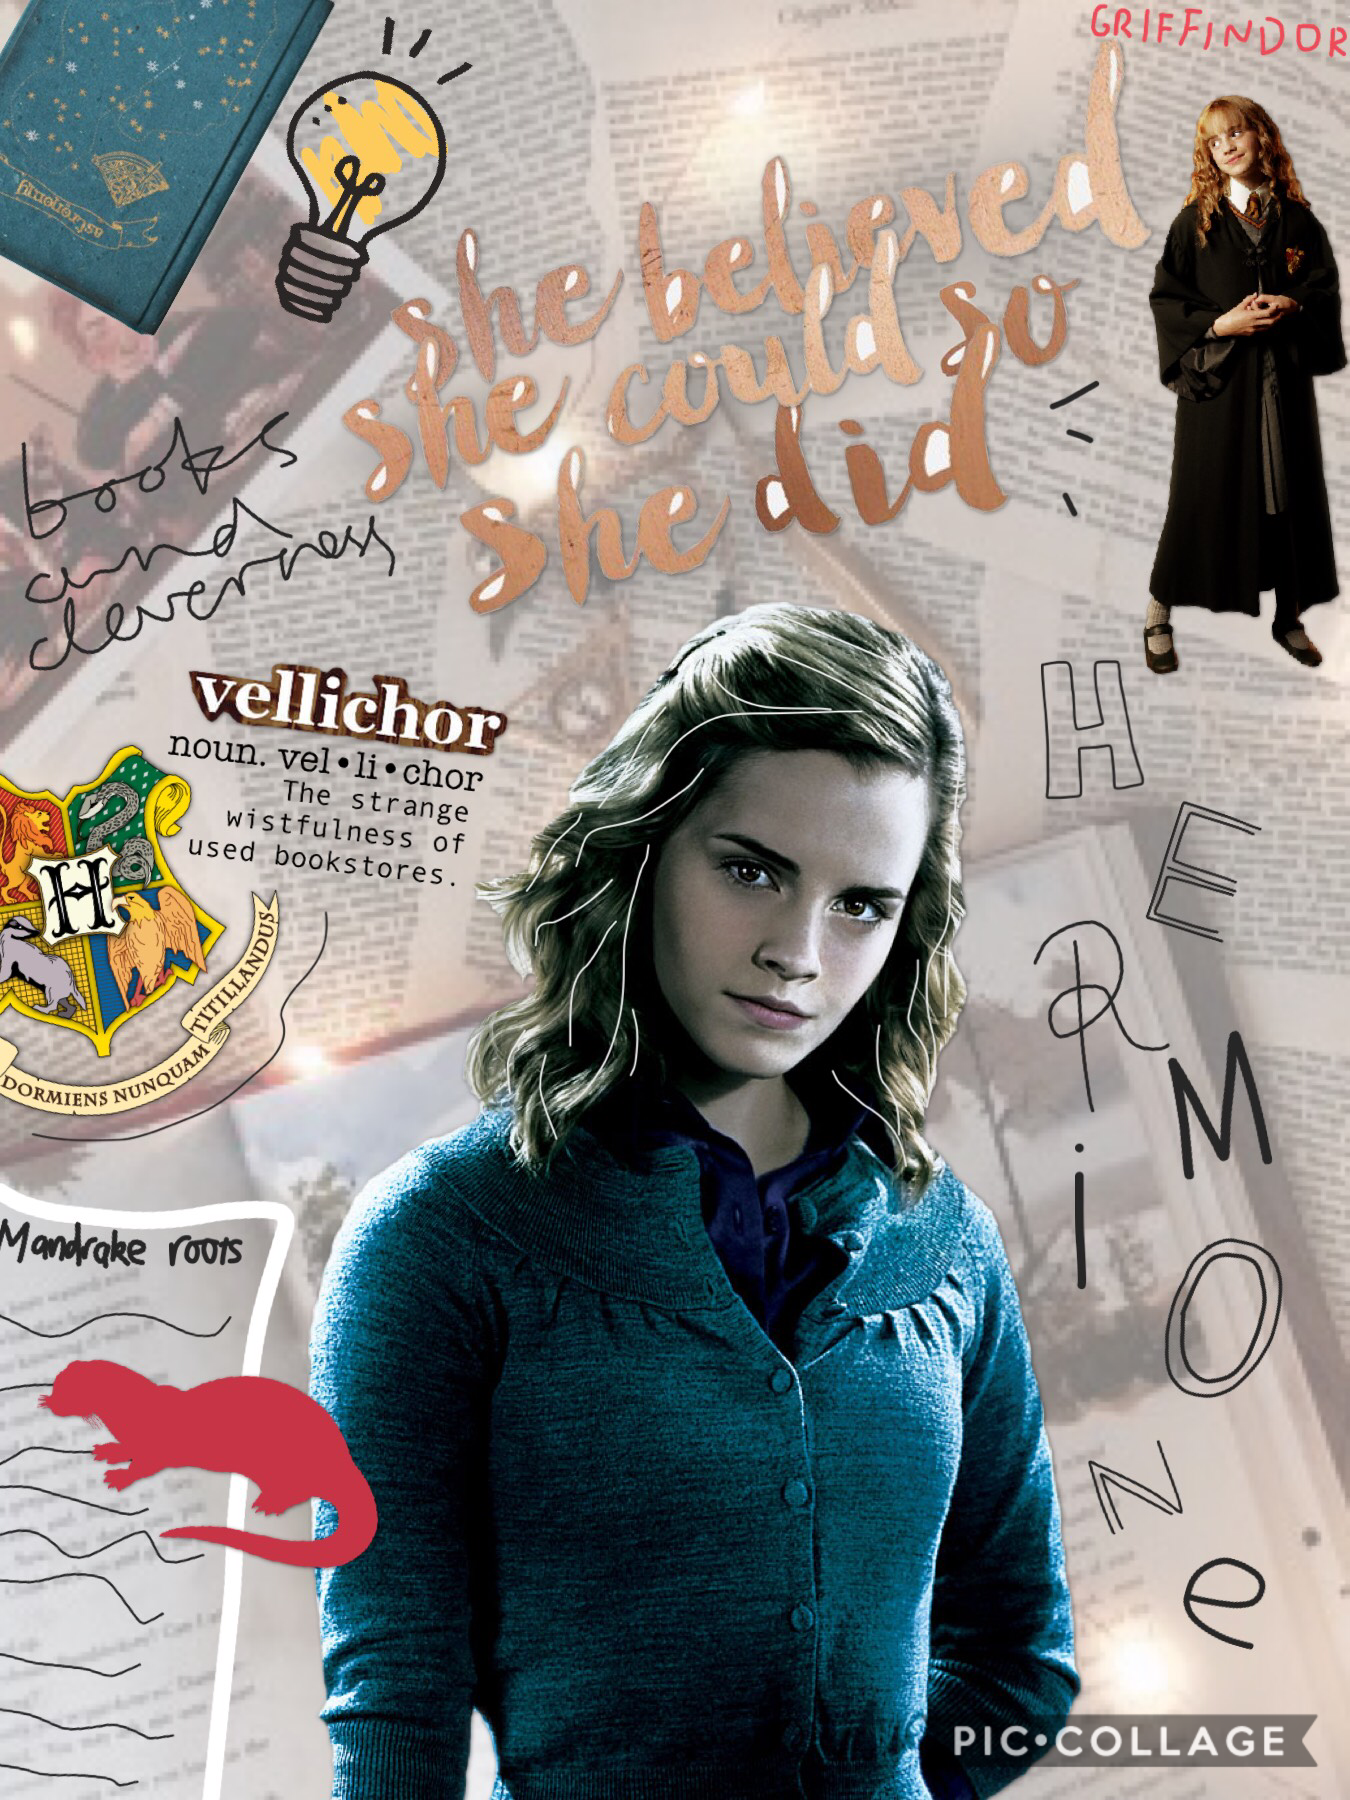 I love Hermione! QOTD: Dramione or Romione? AOTD: Dramione for life! 💚 xoxo Pie